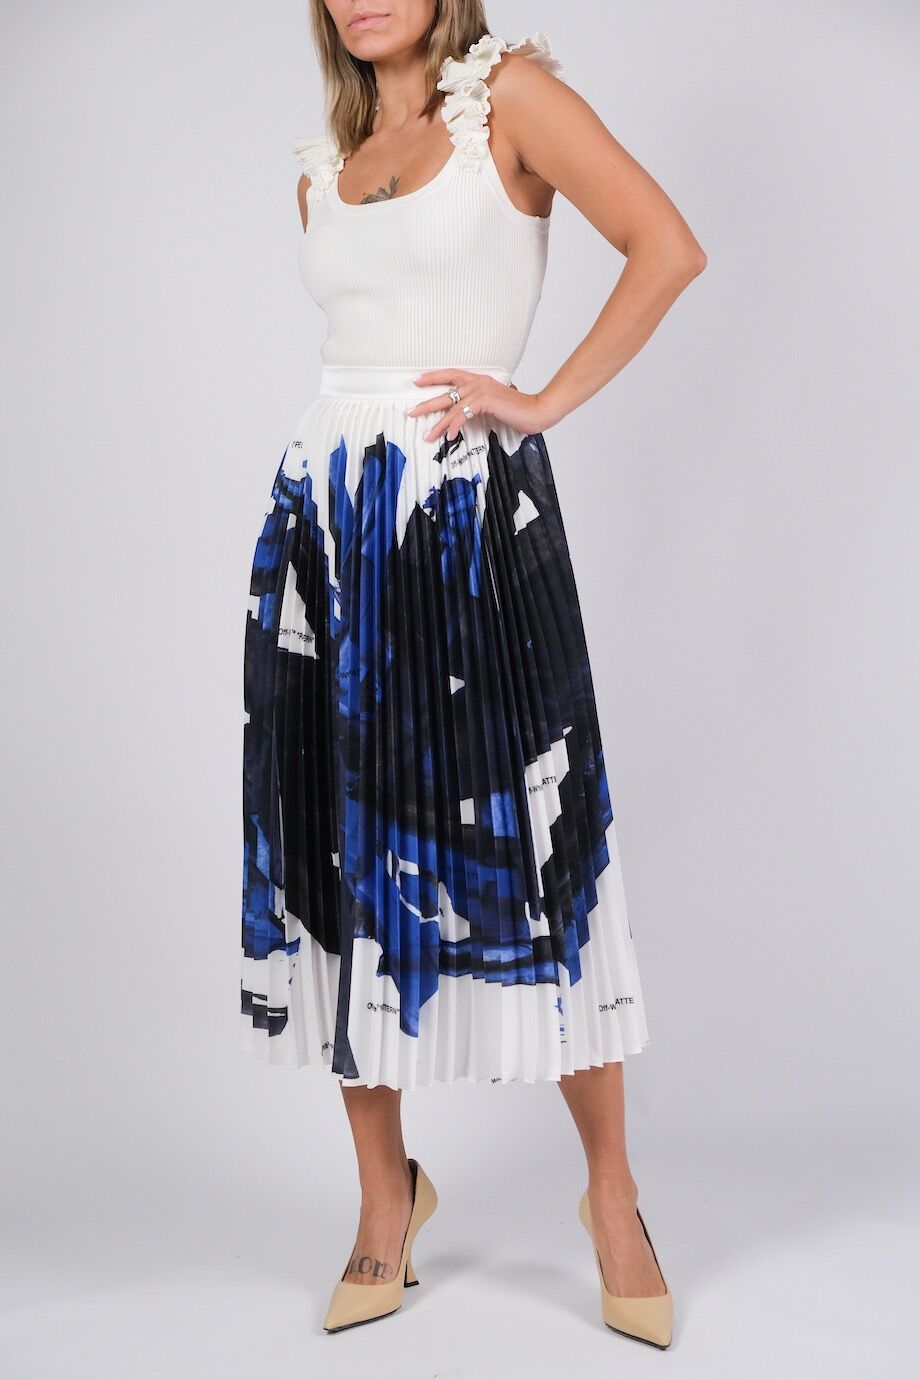 image 1 Шелковая юбка плиссе сине-белой расцветки с надписями